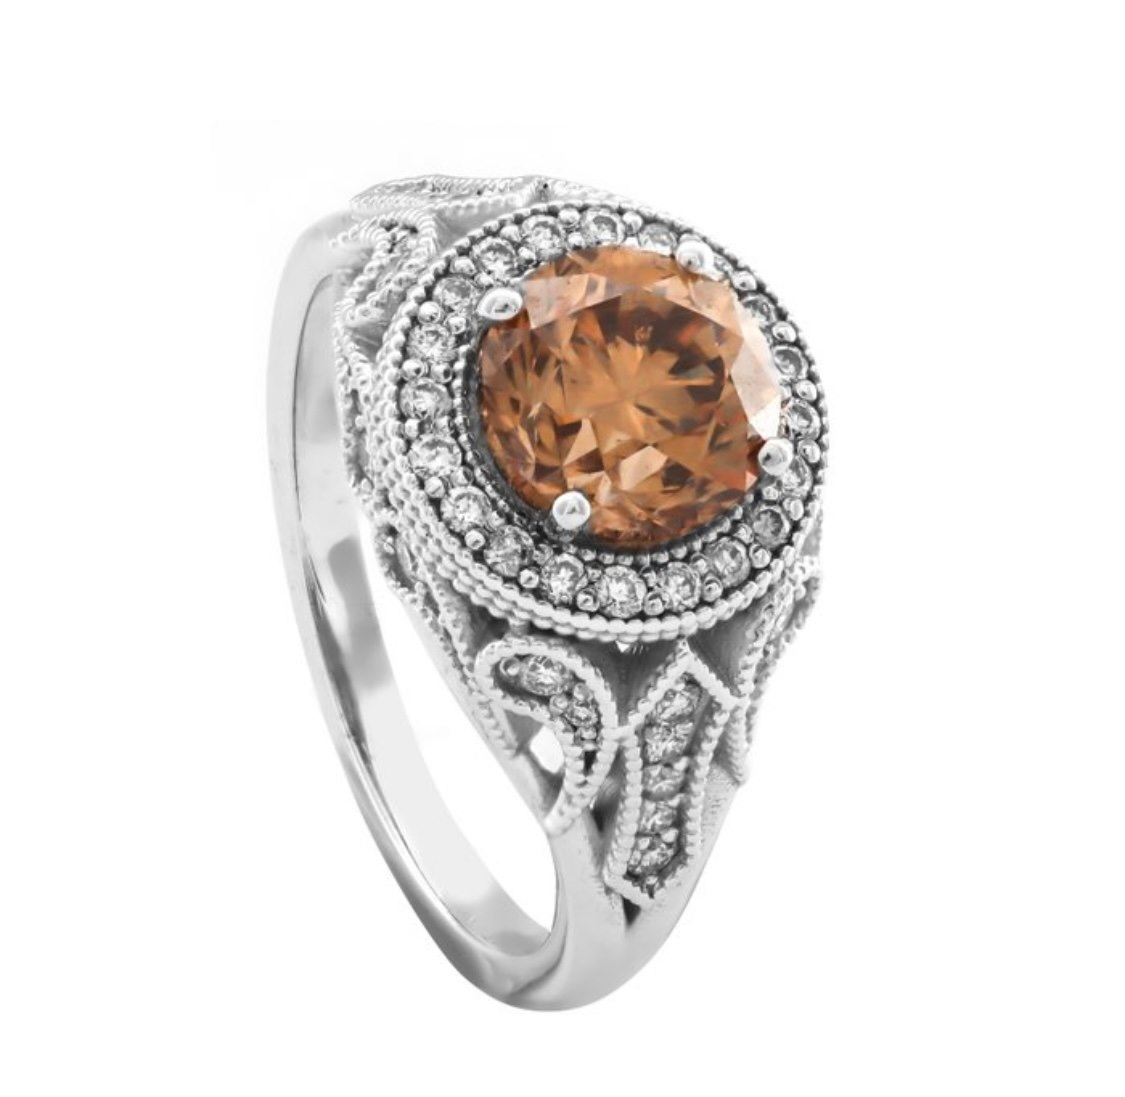 .. - Prsten s centrálním diamantem 1,92 ct a diamanty 0,39 ct, zlato 585/1000, značeno platnou puncovní značkou "labuť", hrubá hmotnost 5,85 g